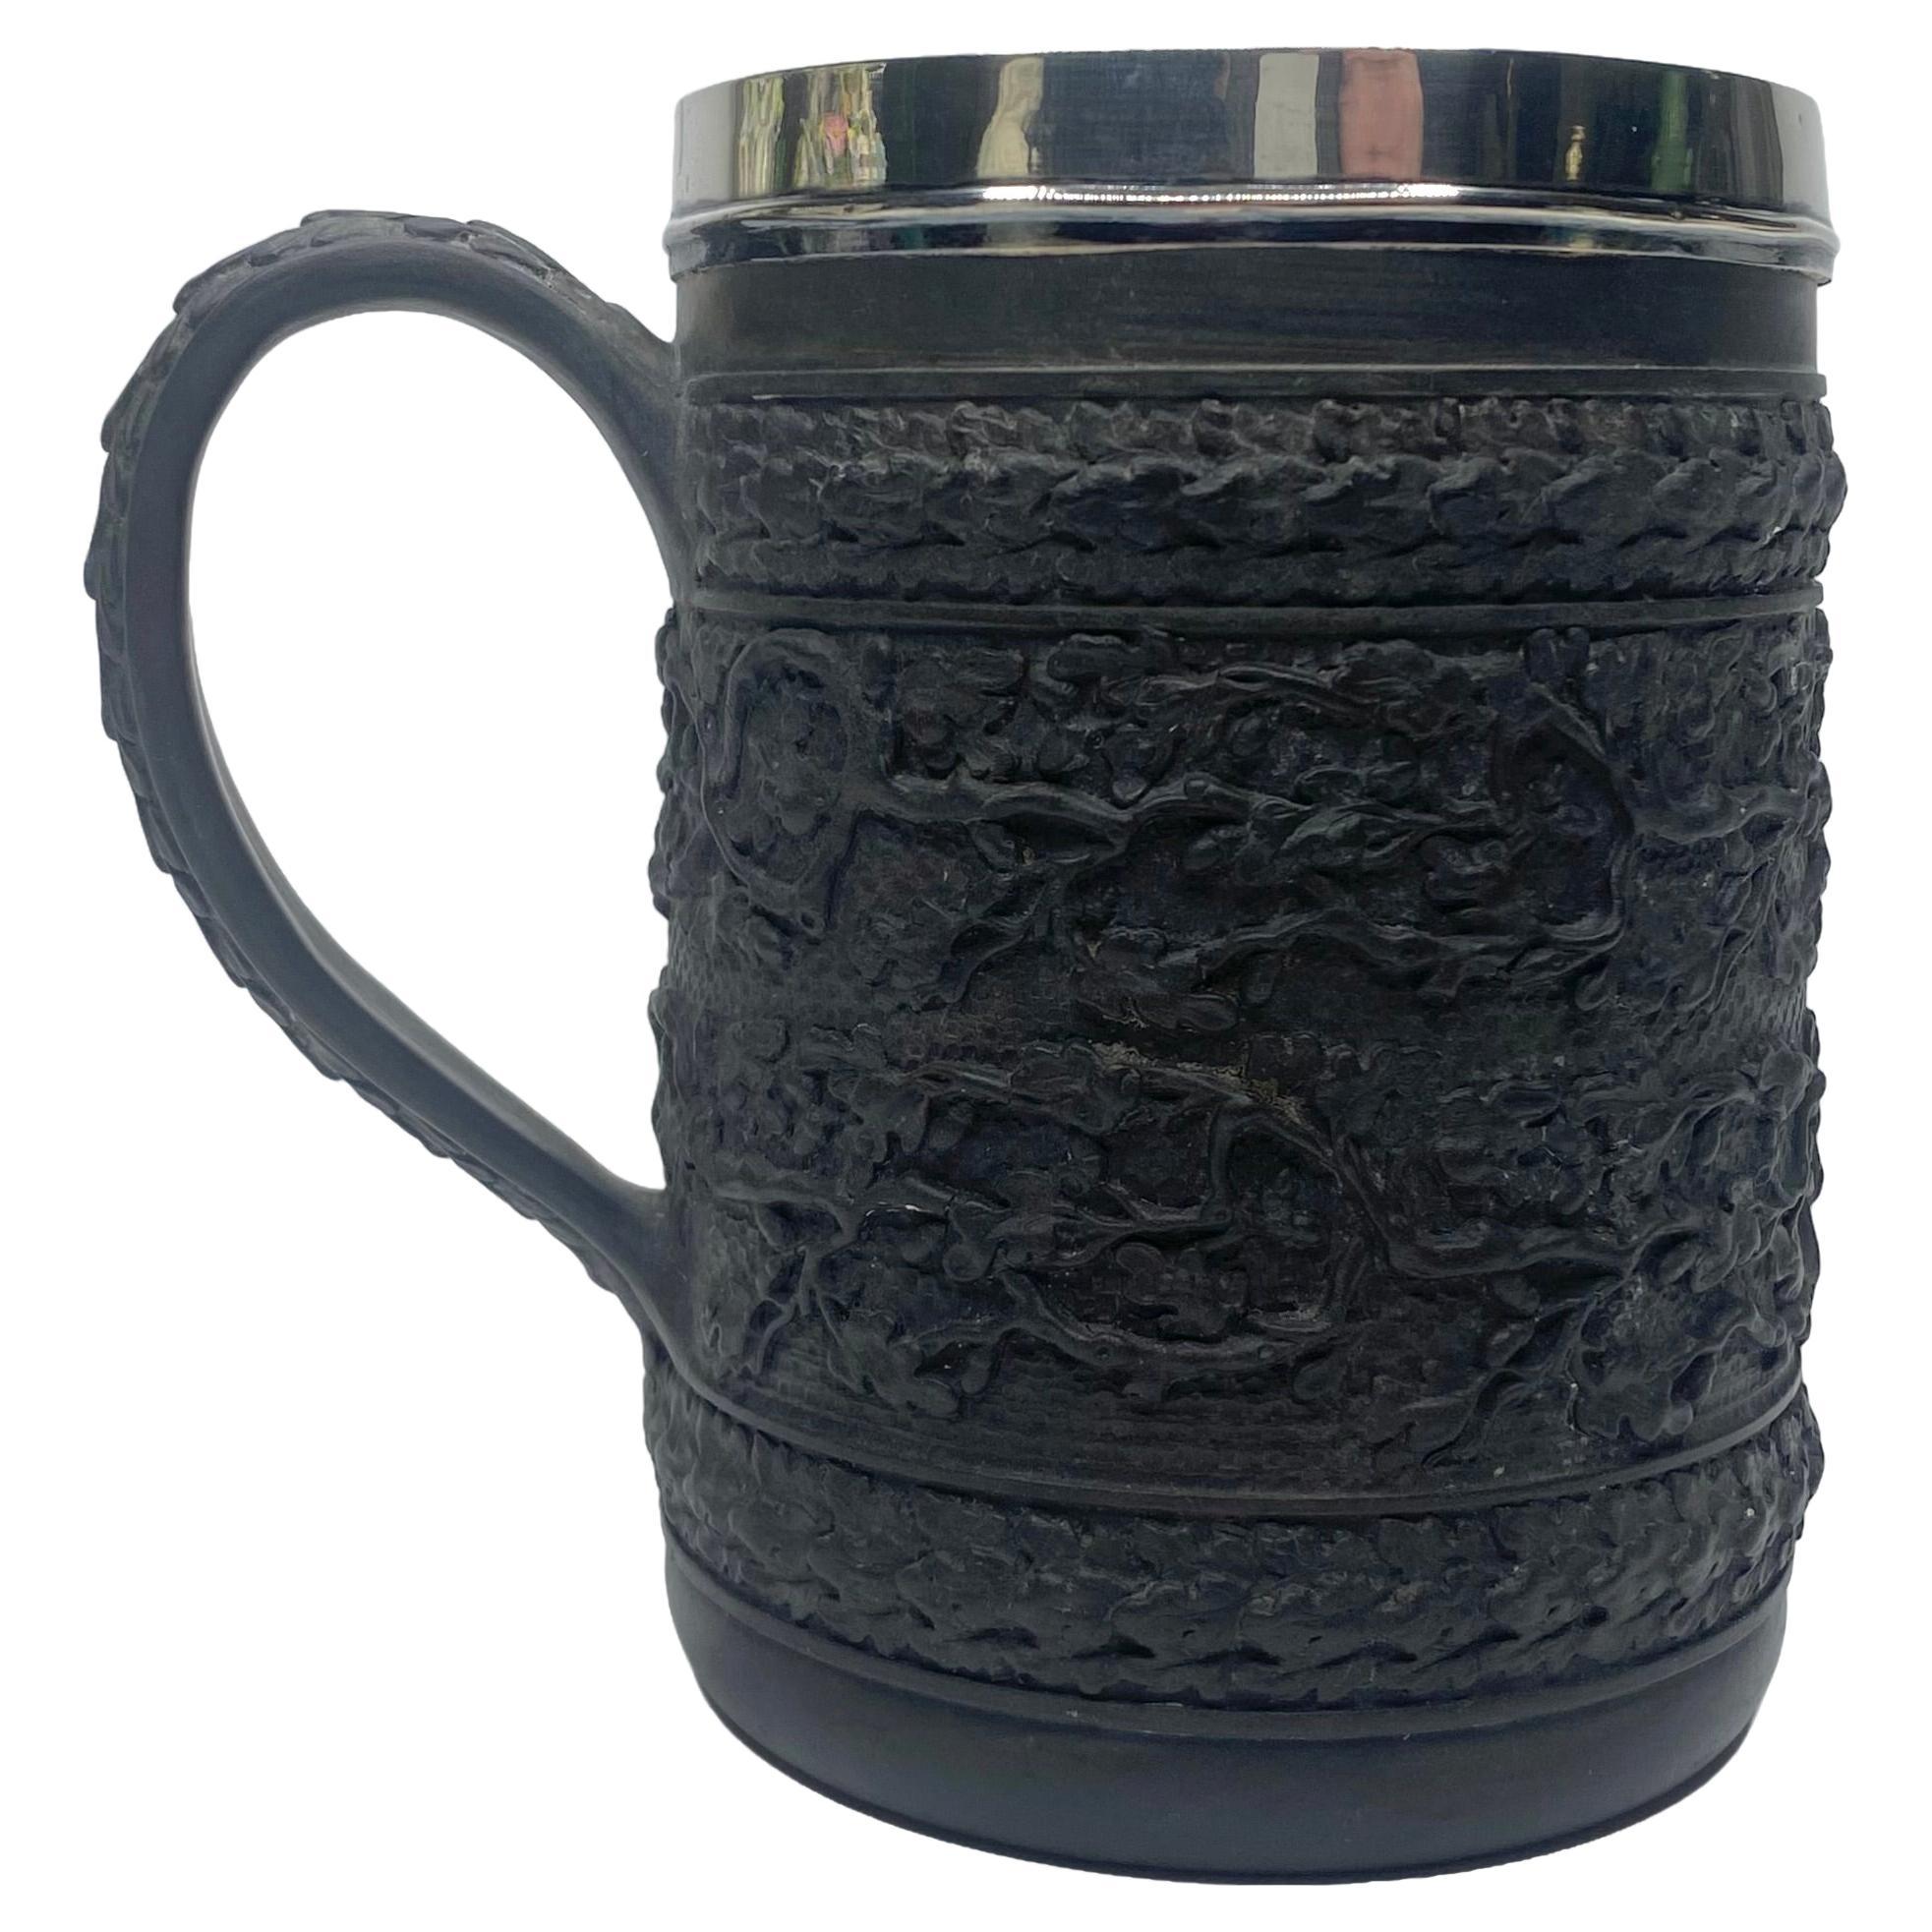 Wedgwood black basalt mug, silver mounted, 1808.